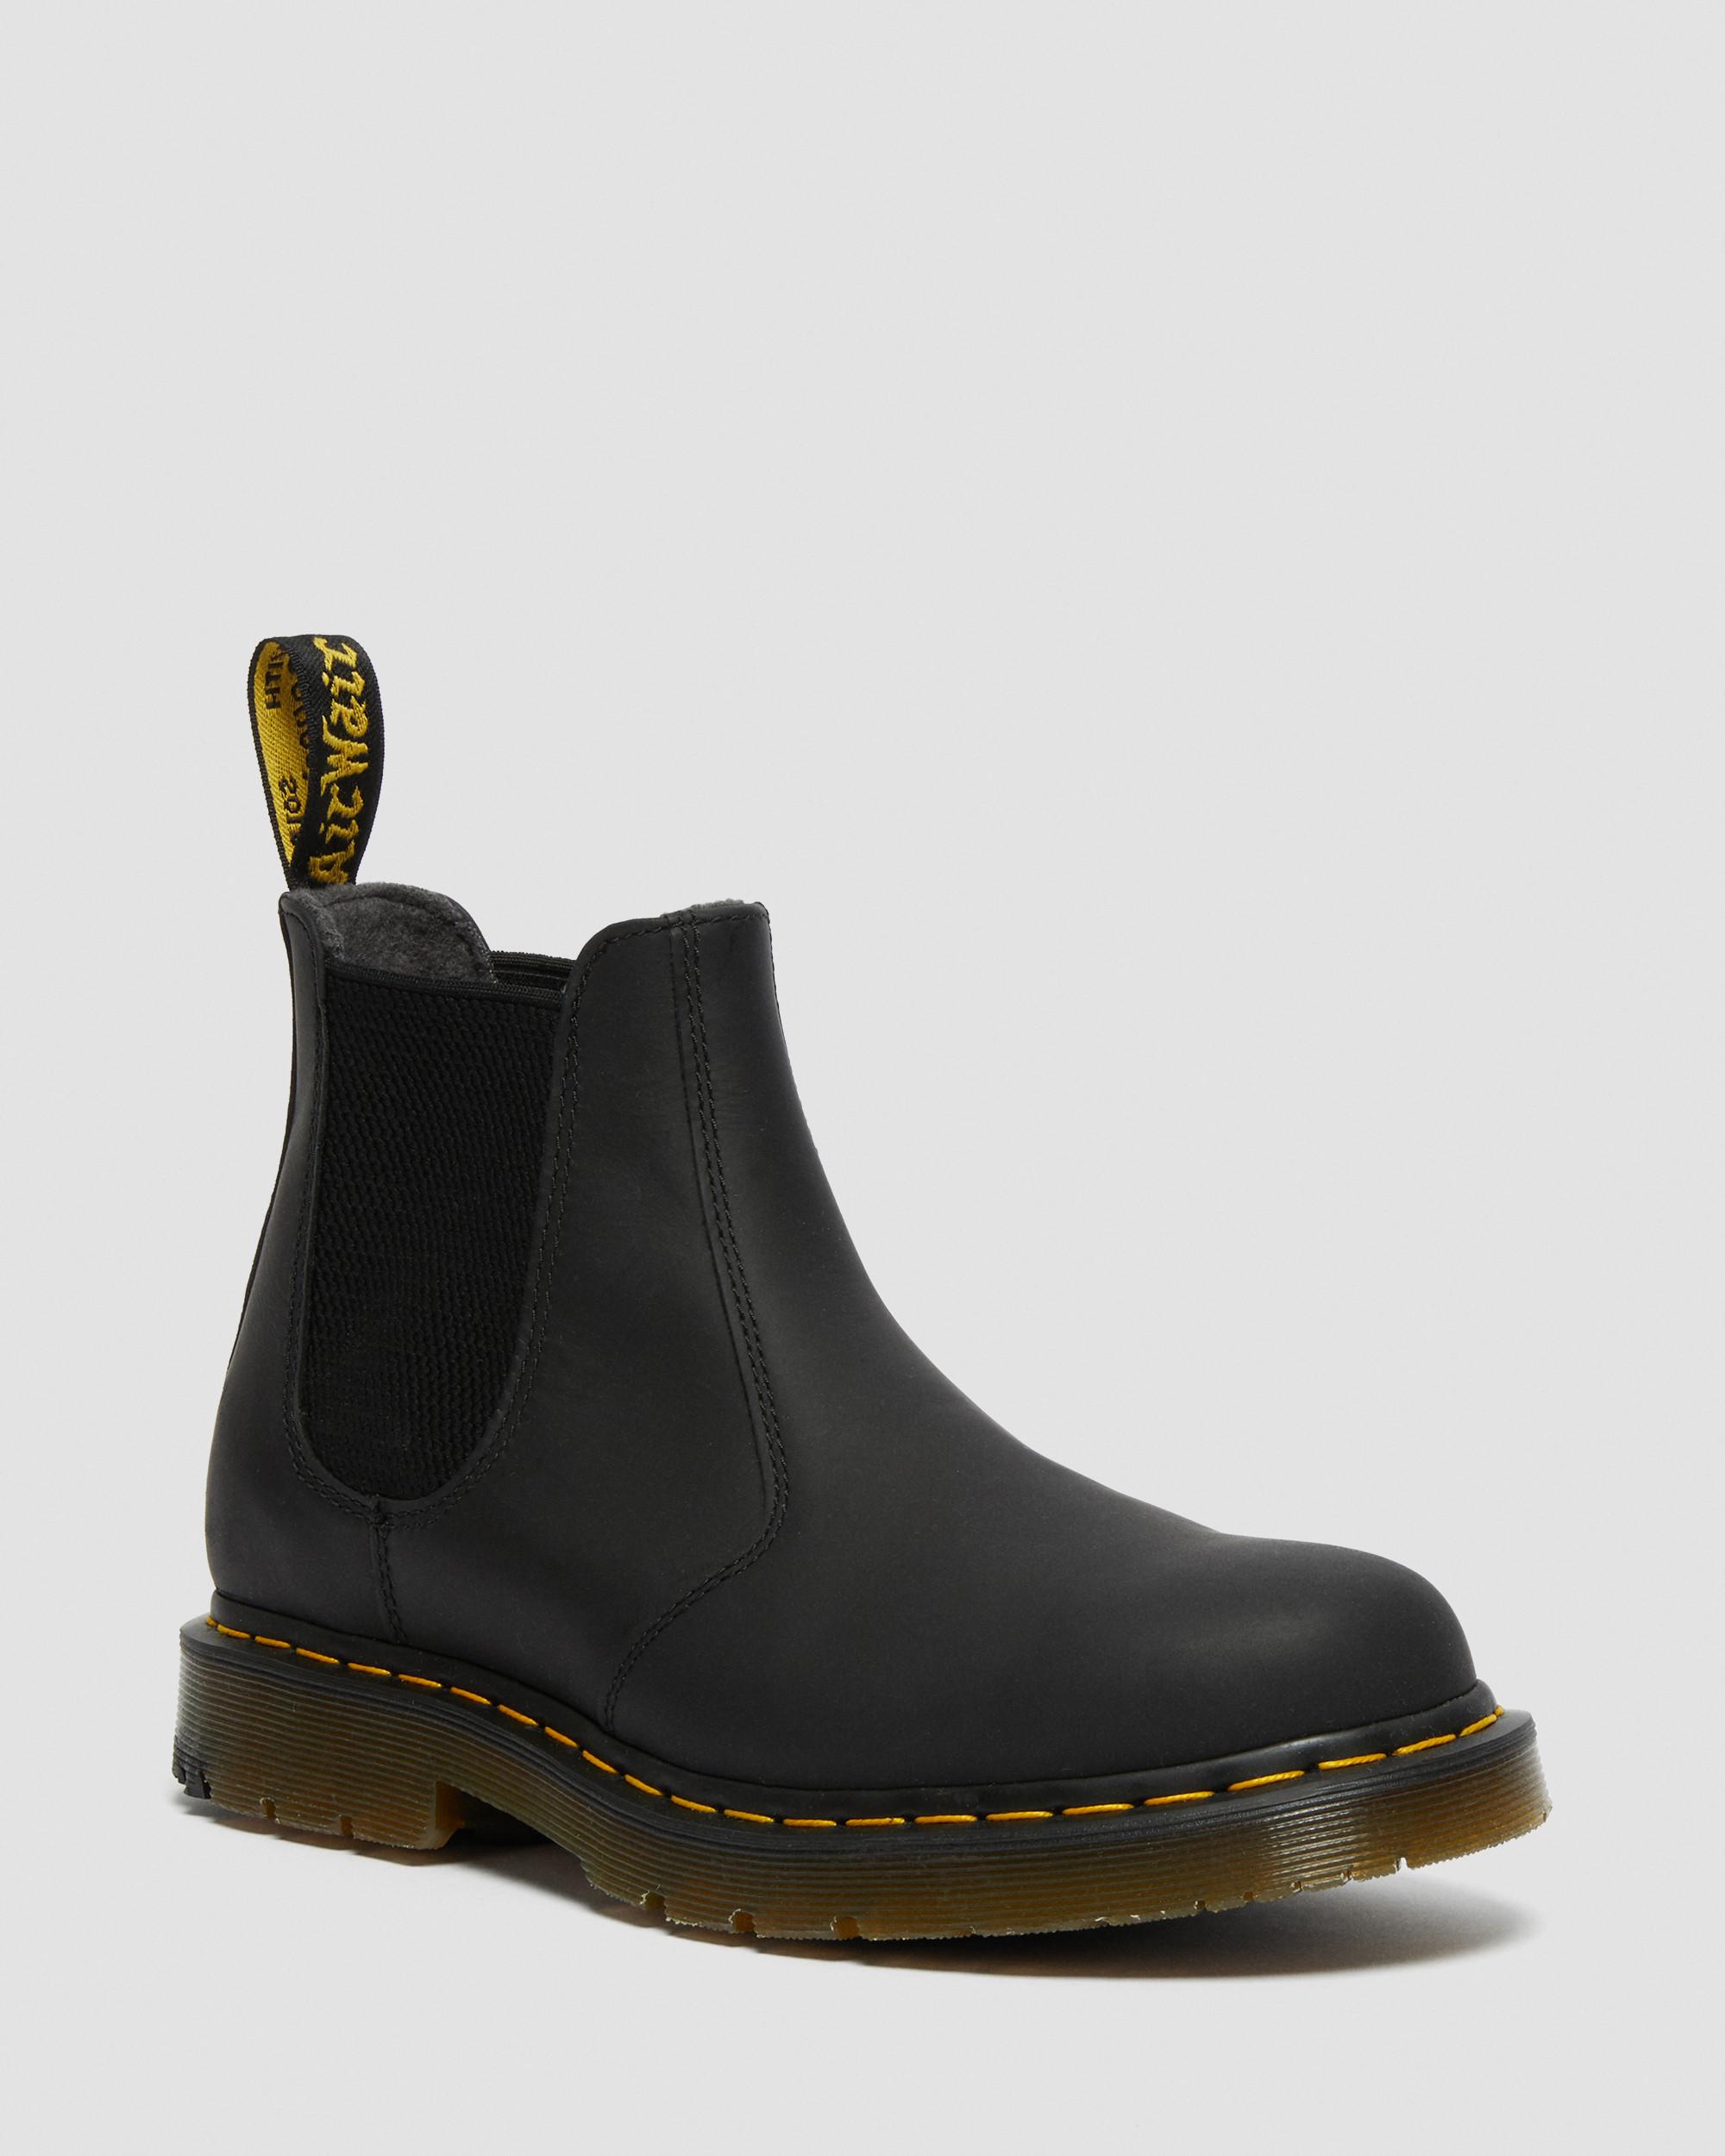 2976 DM's Wintergrip Chelsea Boots, Black | Dr. Martens